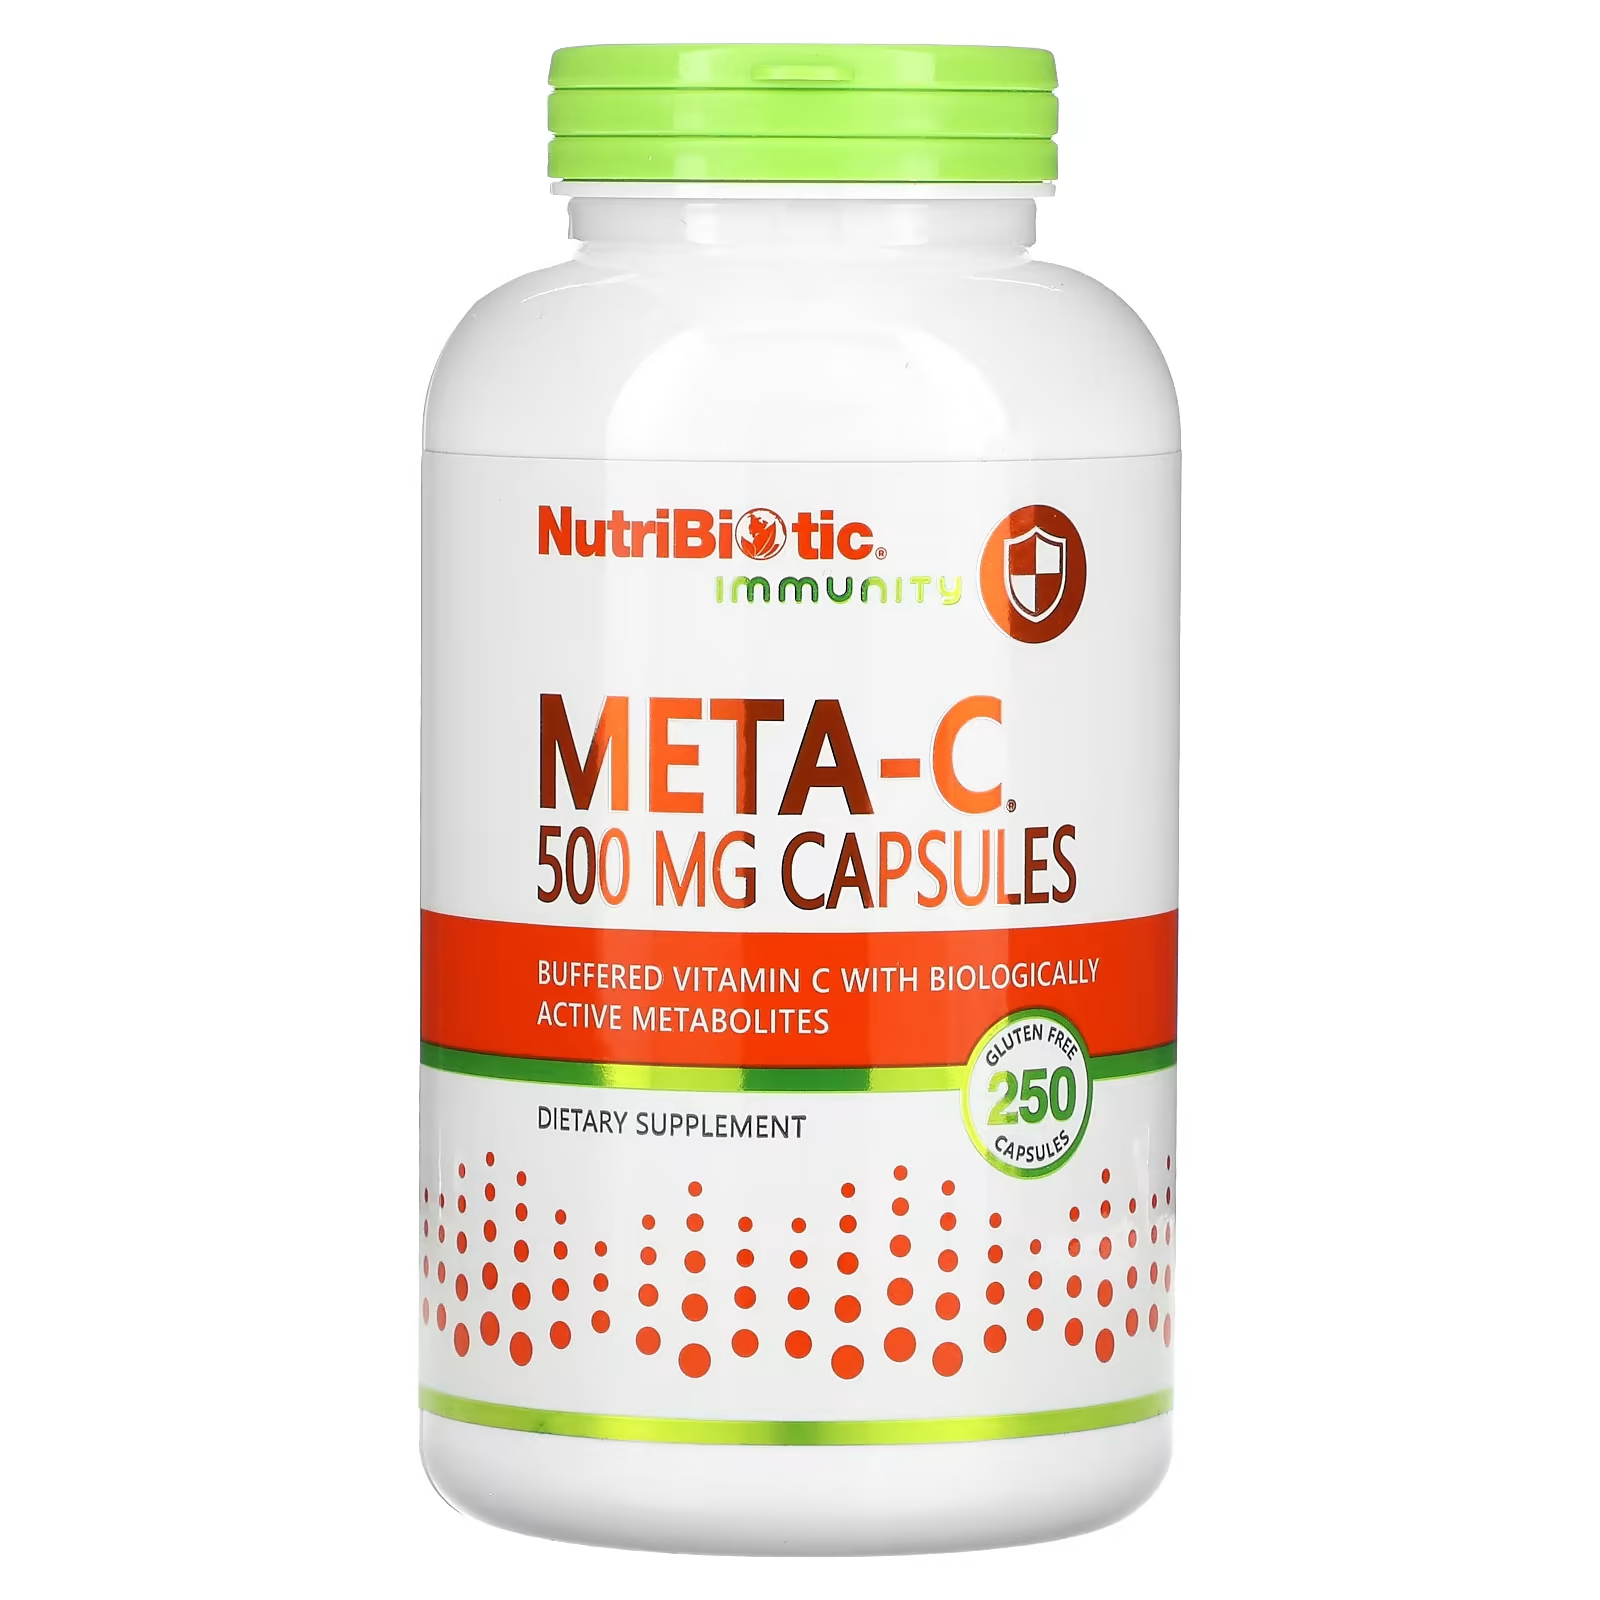 Пищевая добавка NutriBiotic Immunity Meta-C 500 мг, 250 капсул цена и фото